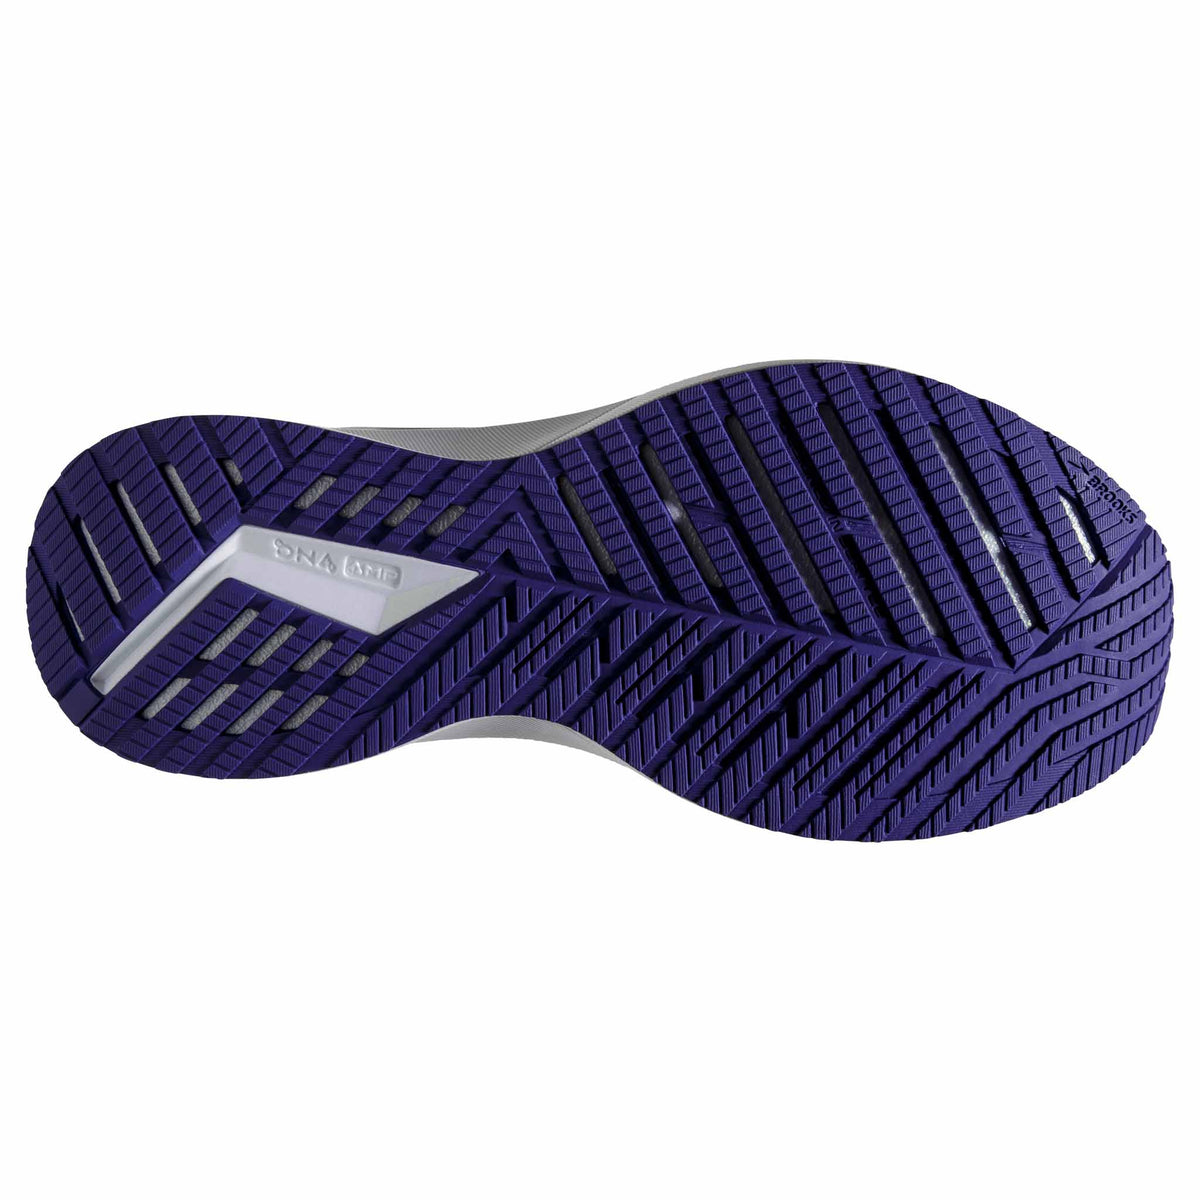 Brooks Levitate StealthFit 5 chaussures de course a pied pour femme - White / Navy Blue / Yucca - semelle